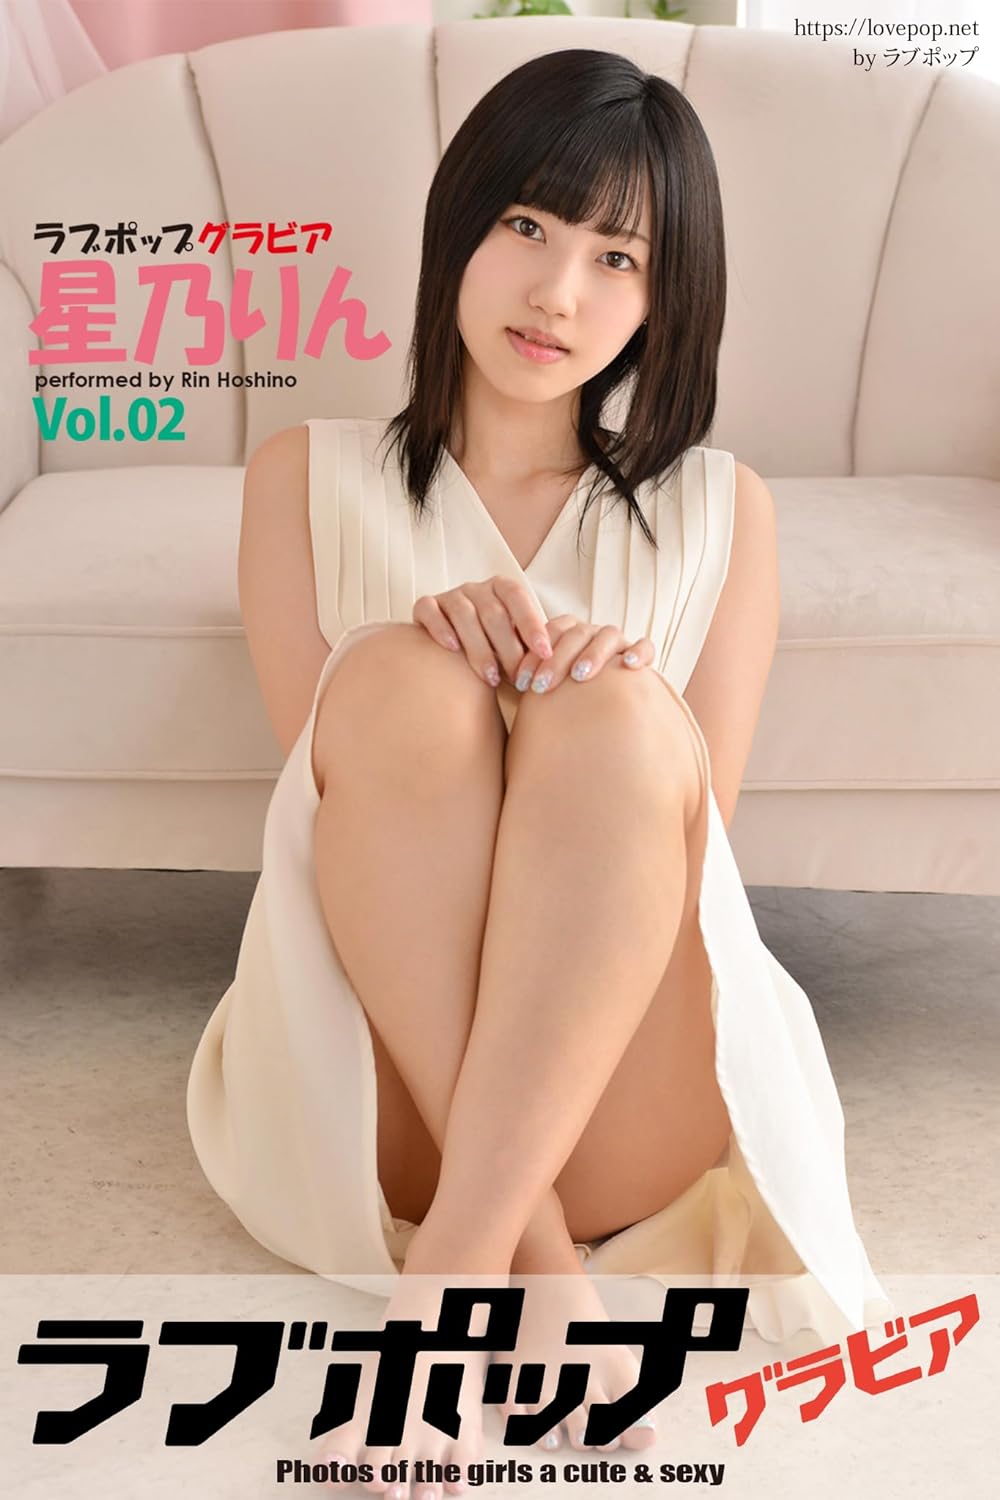 ラブポップグラビア　星乃りん Vol.02 (ラビリンス) Kindle版のサンプル画像